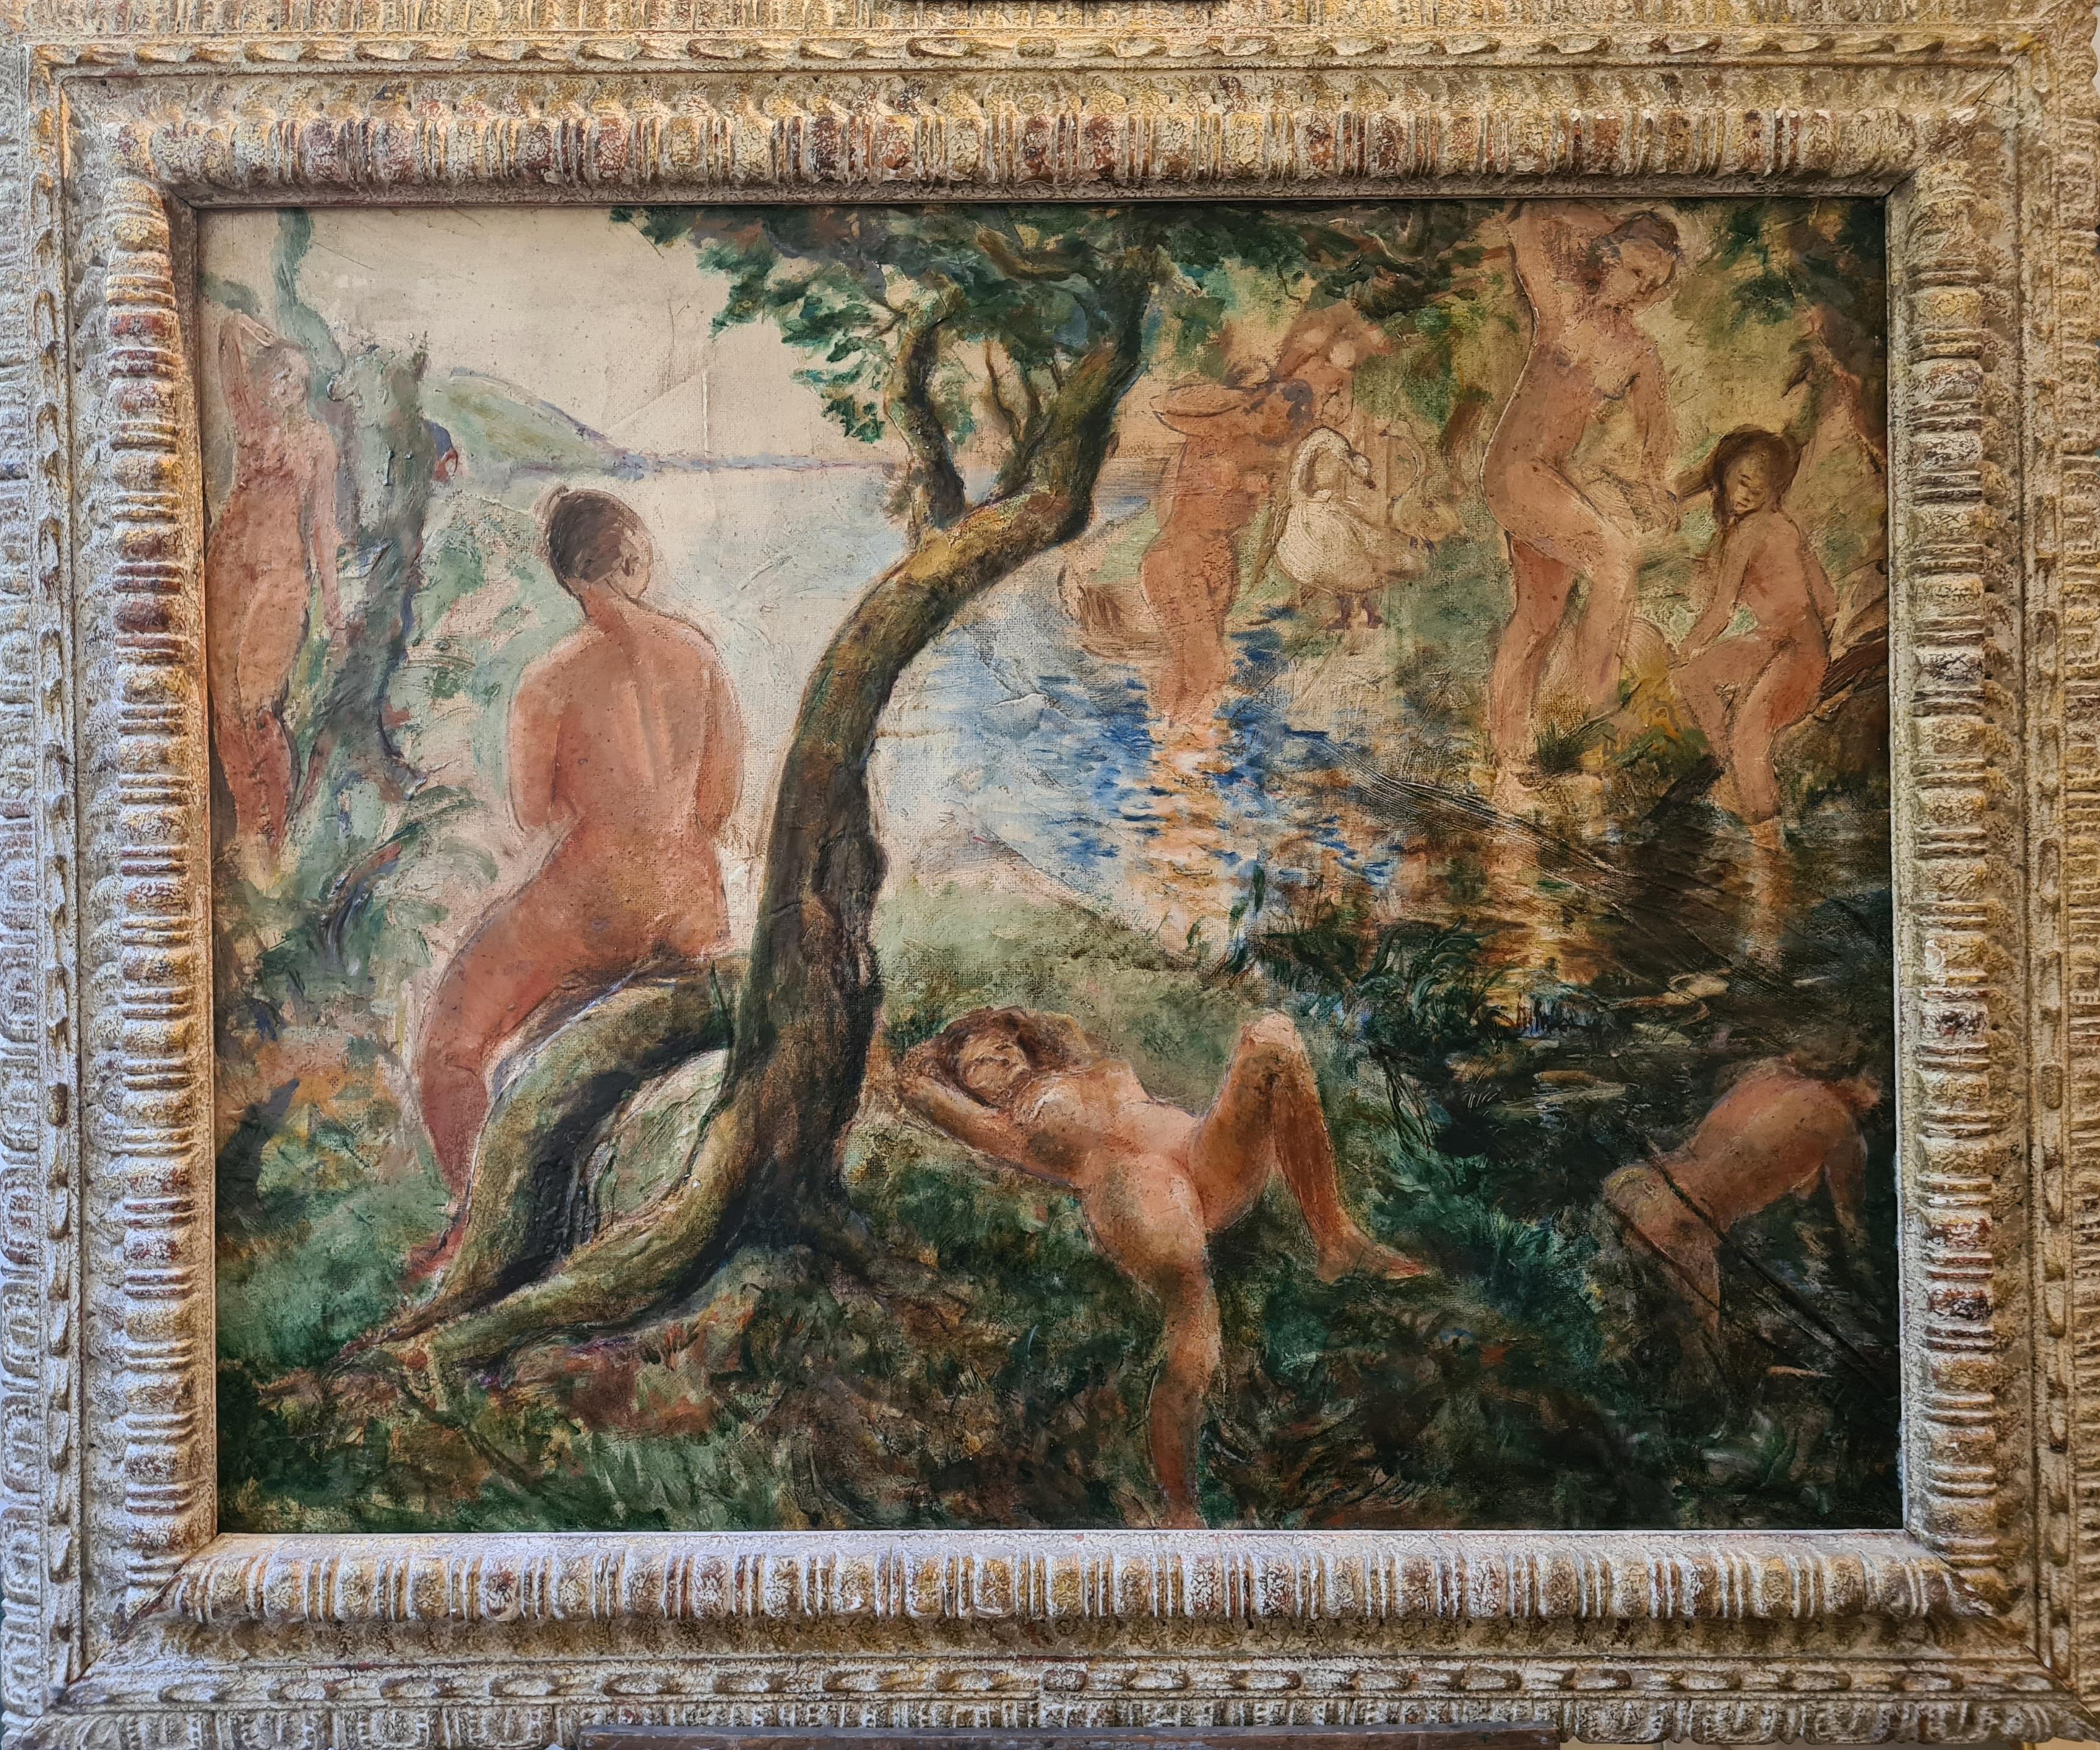 Unknown Nude Painting - Impressionist Large Scale Female Nudes in a Landscape, 'L' été a la rivière'